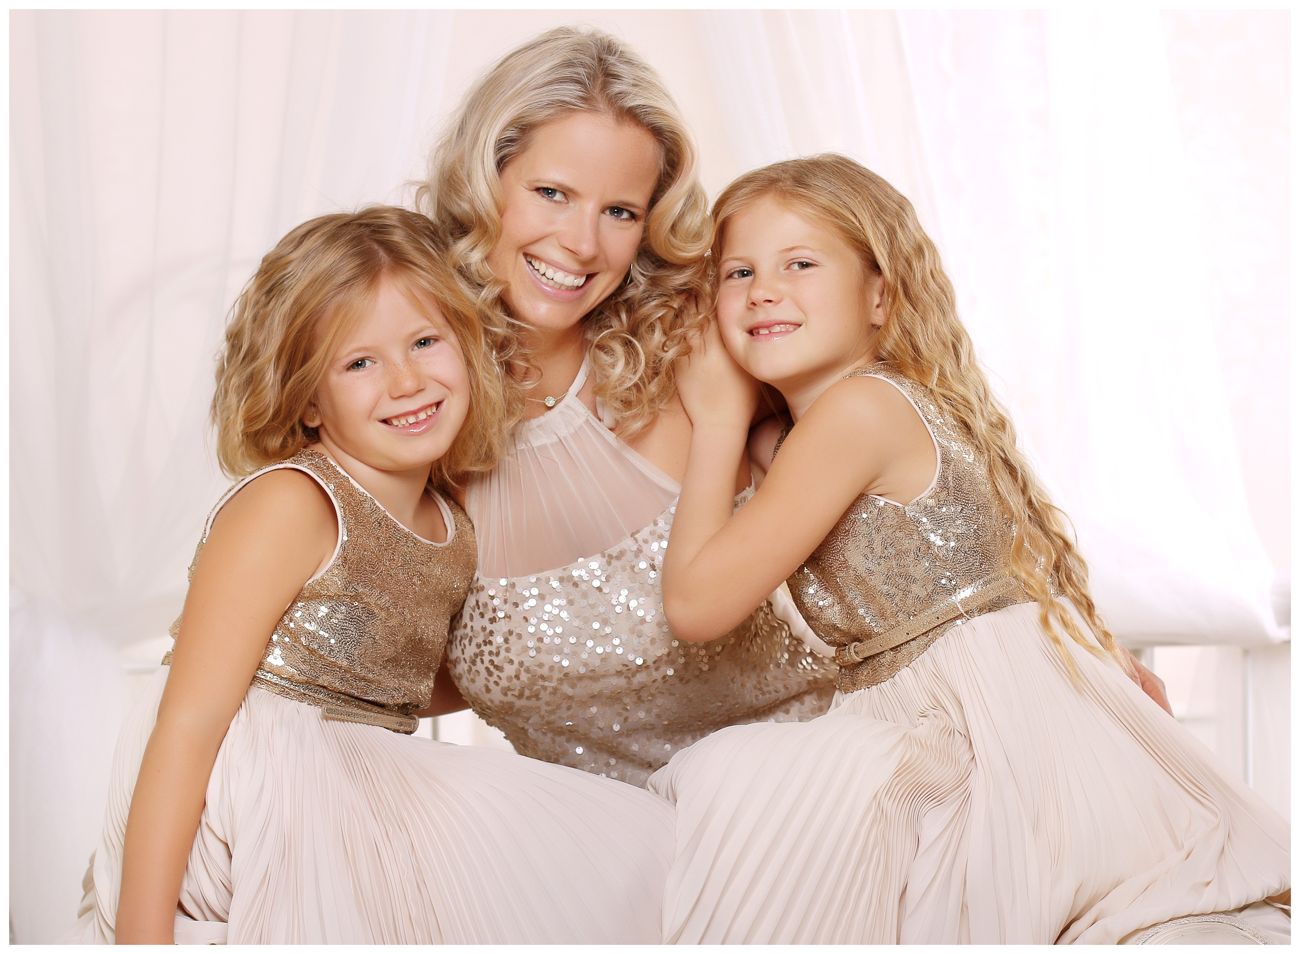 Vánoční rodinné focení maminky se dvěma dcerami ve stříbrných šatech | © Fotoprome.cz